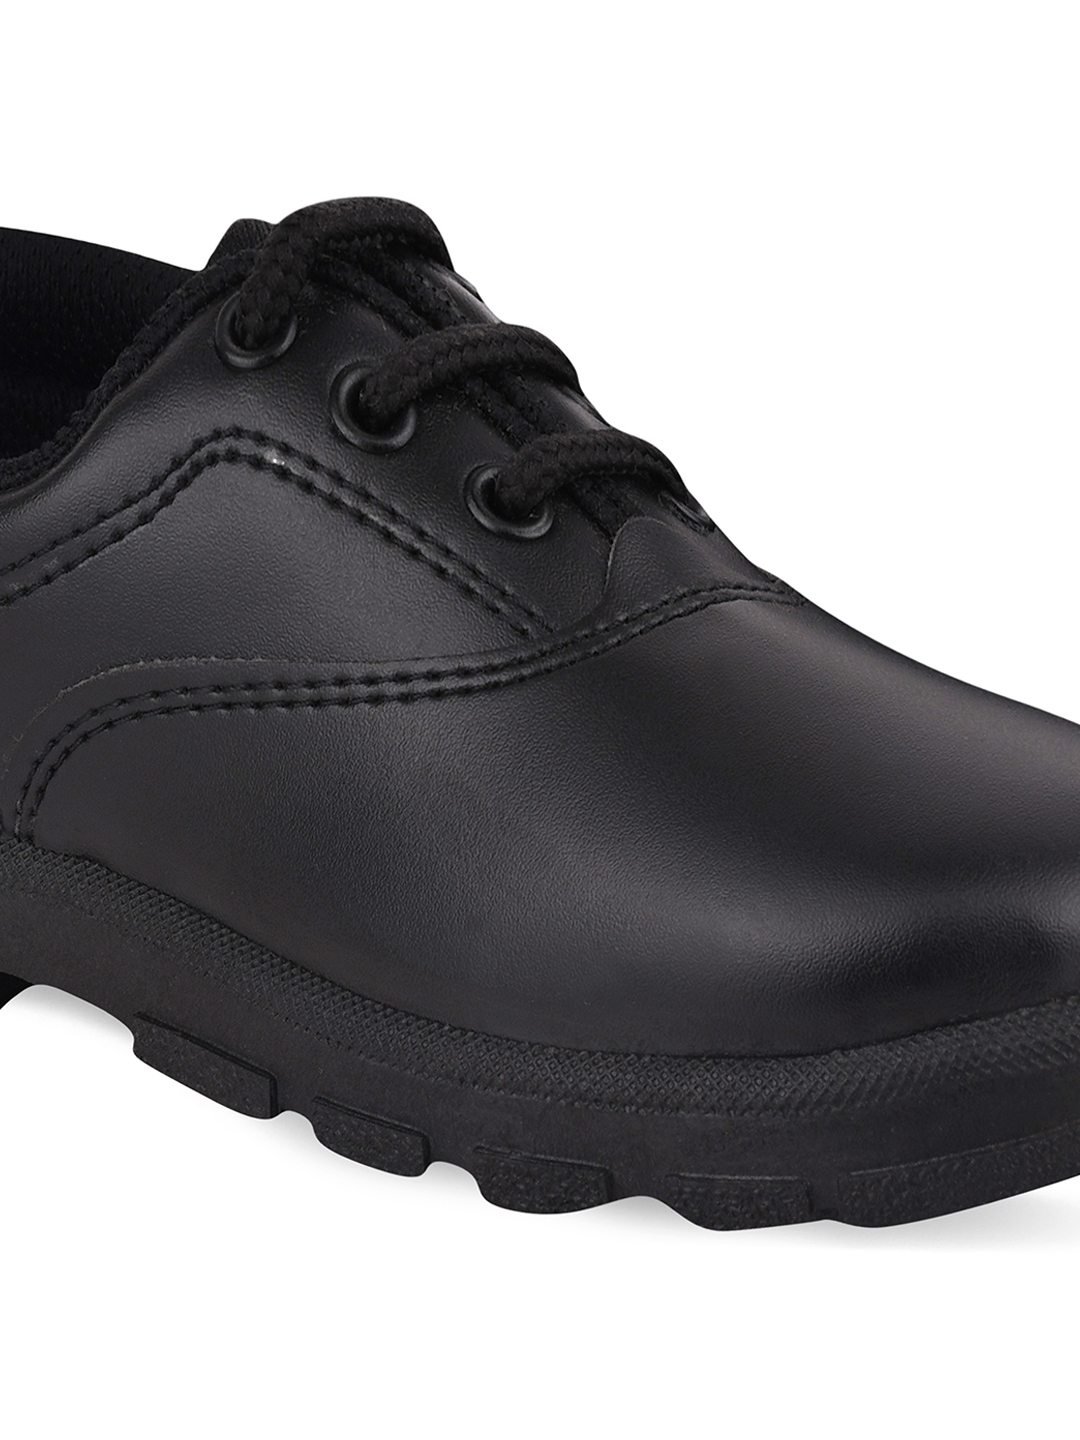 Campus Shoes | Boys Black CS A7S School Shoes 3